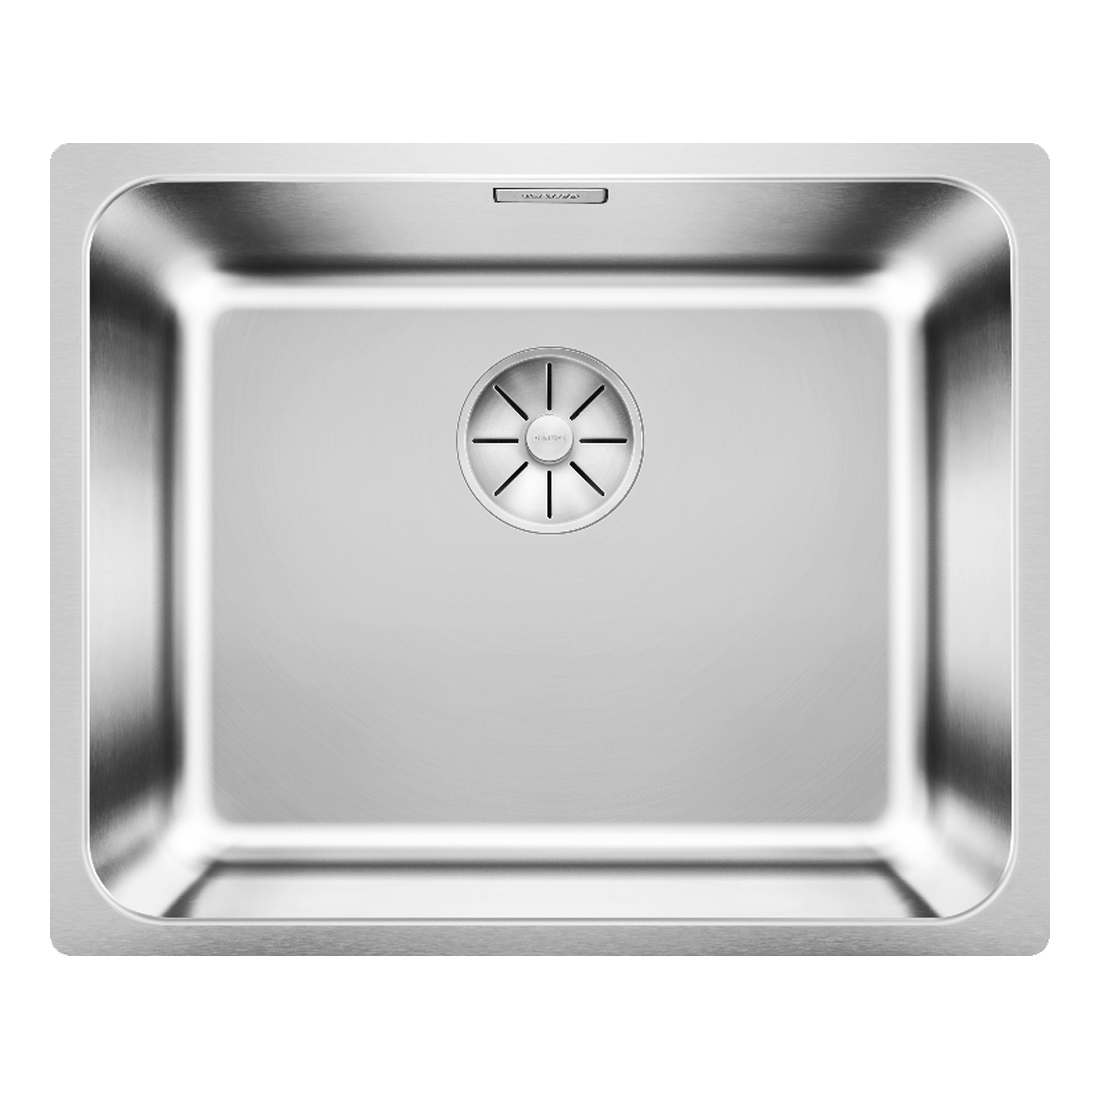 Кухонная мойка Blanco Solis 500-U полированная сталь